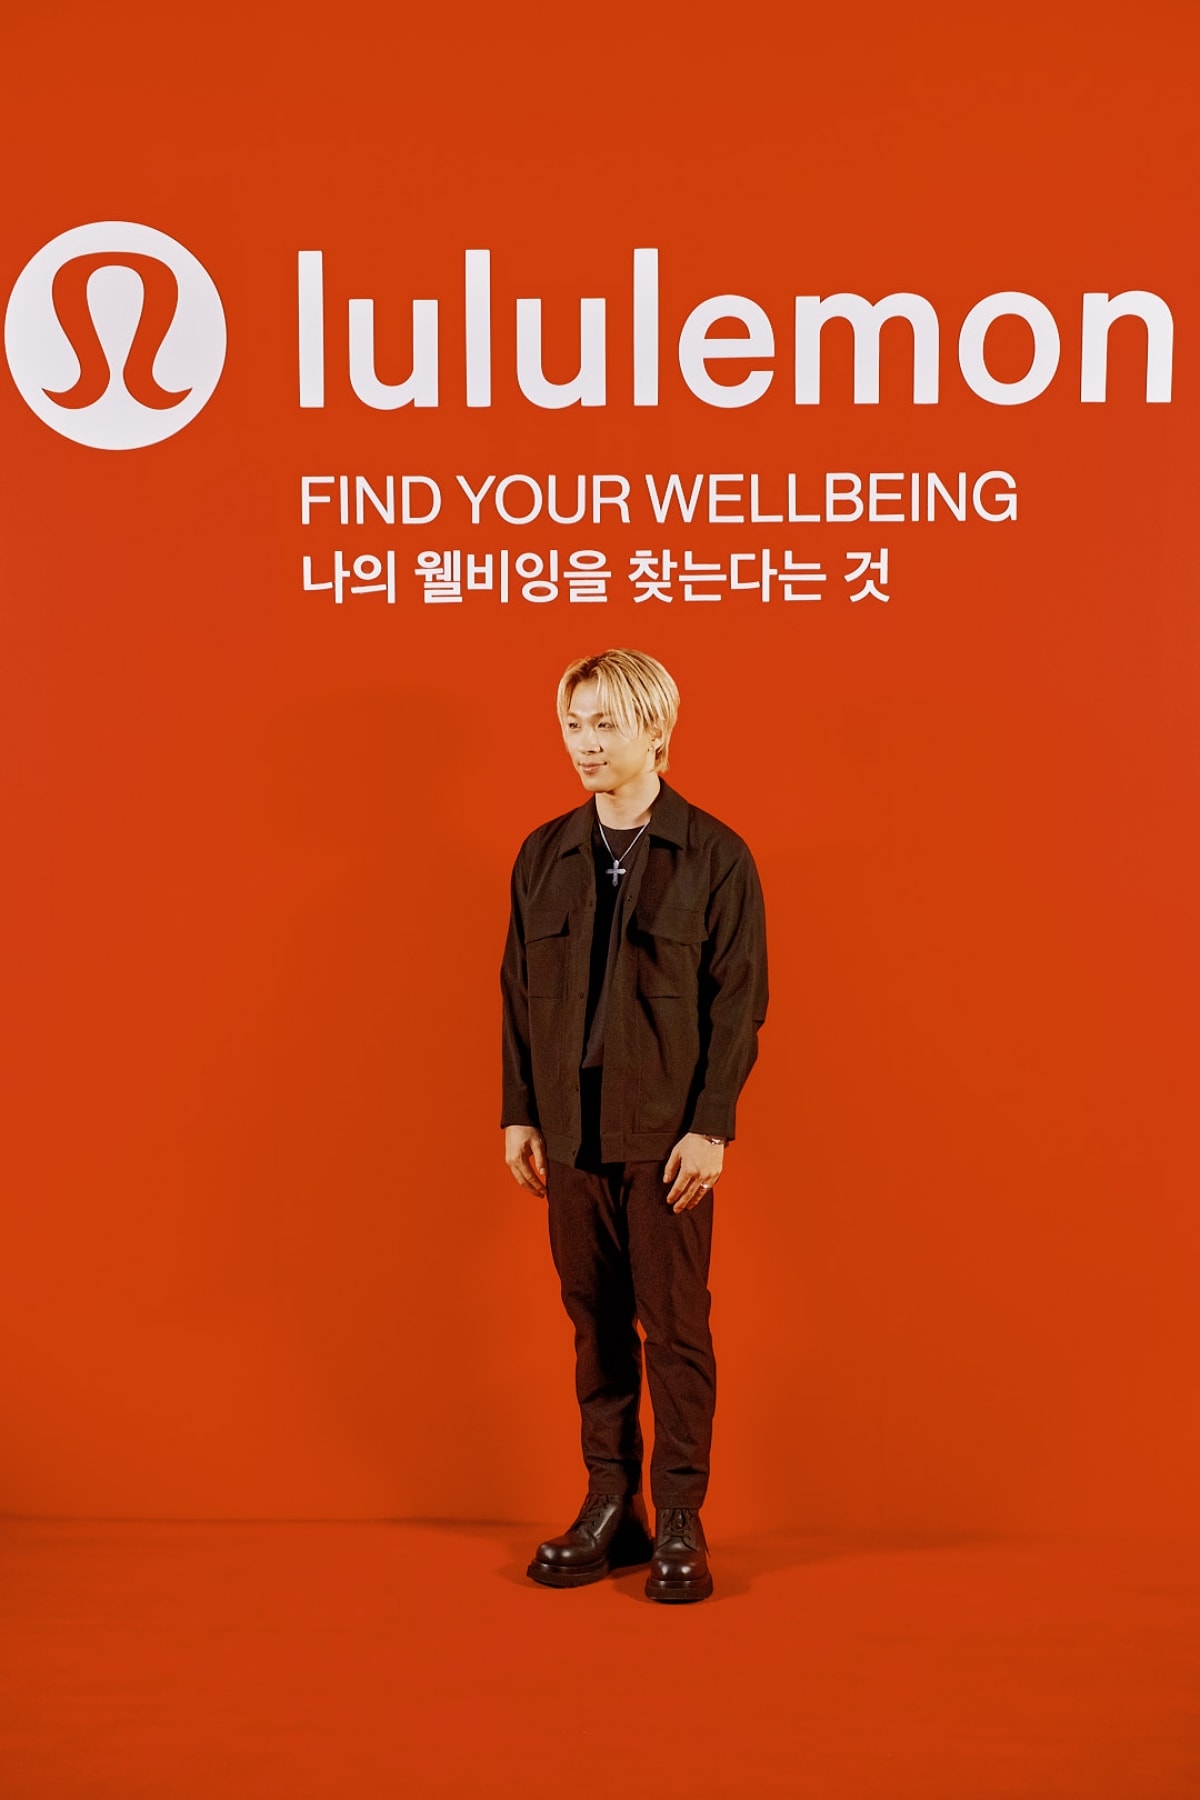 모두의 웰빙을 위한, 룰루레몬 ‘파인드 유어 웰비잉’ 캠페인 팝업 살펴보기 lululemon find your wellbeing